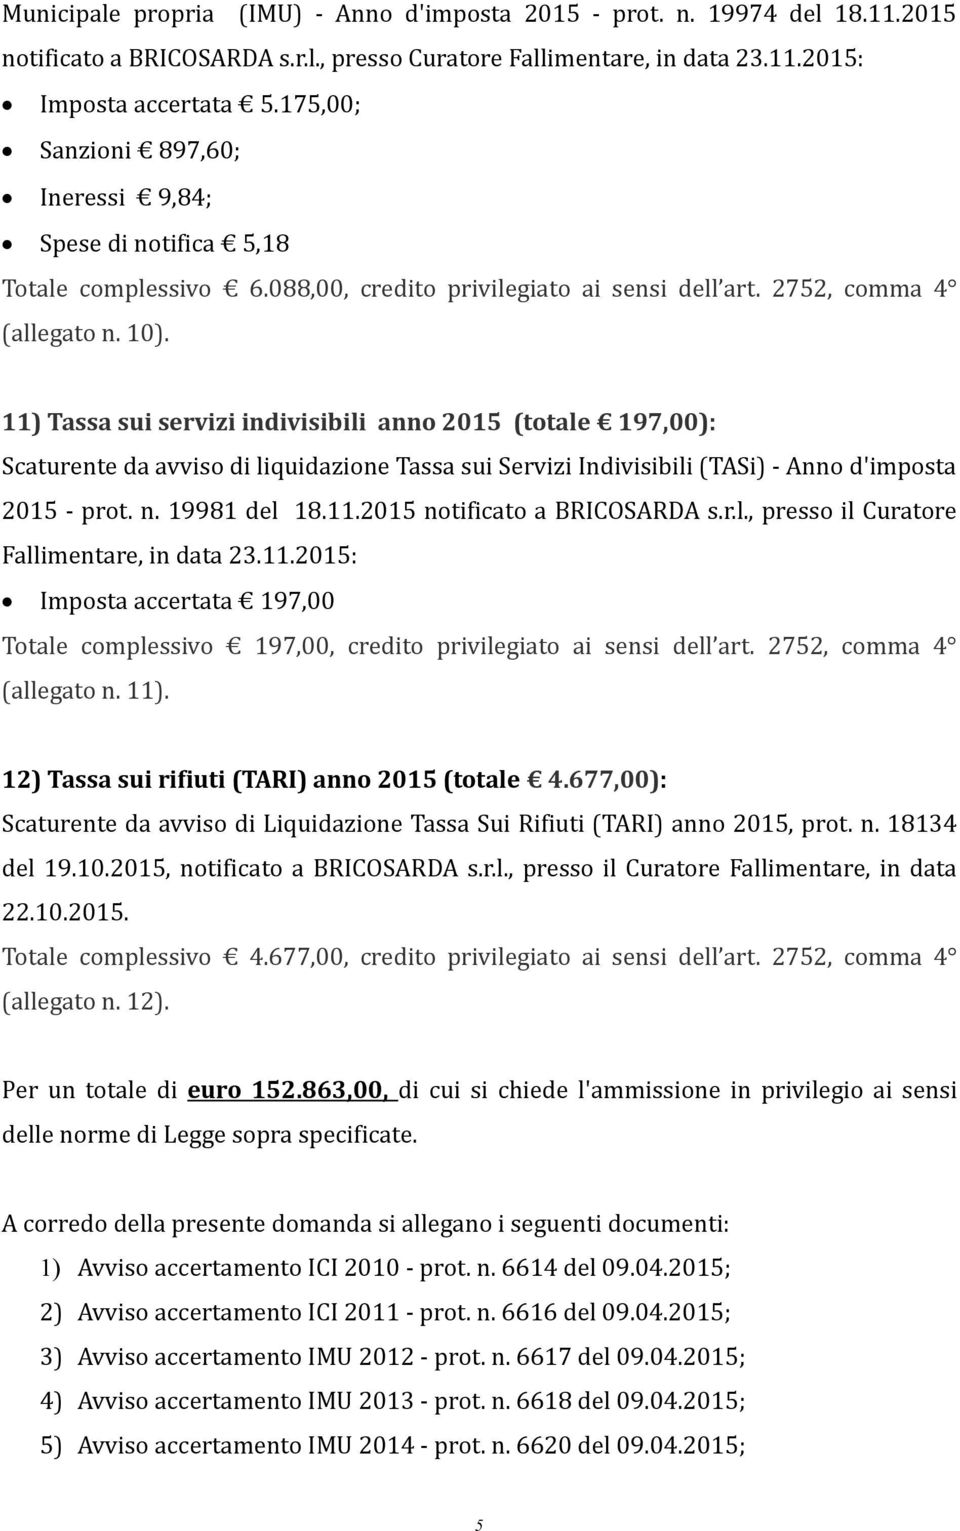 11) Tassa sui servizi indivisibili anno 2015 (totale 197,00): Scaturente da avviso di liquidazione Tassa sui Servizi Indivisibili (TASi) - Anno d'imposta 2015 - prot. n. 19981 del 18.11.2015 notificato a BRICOSARDA s.